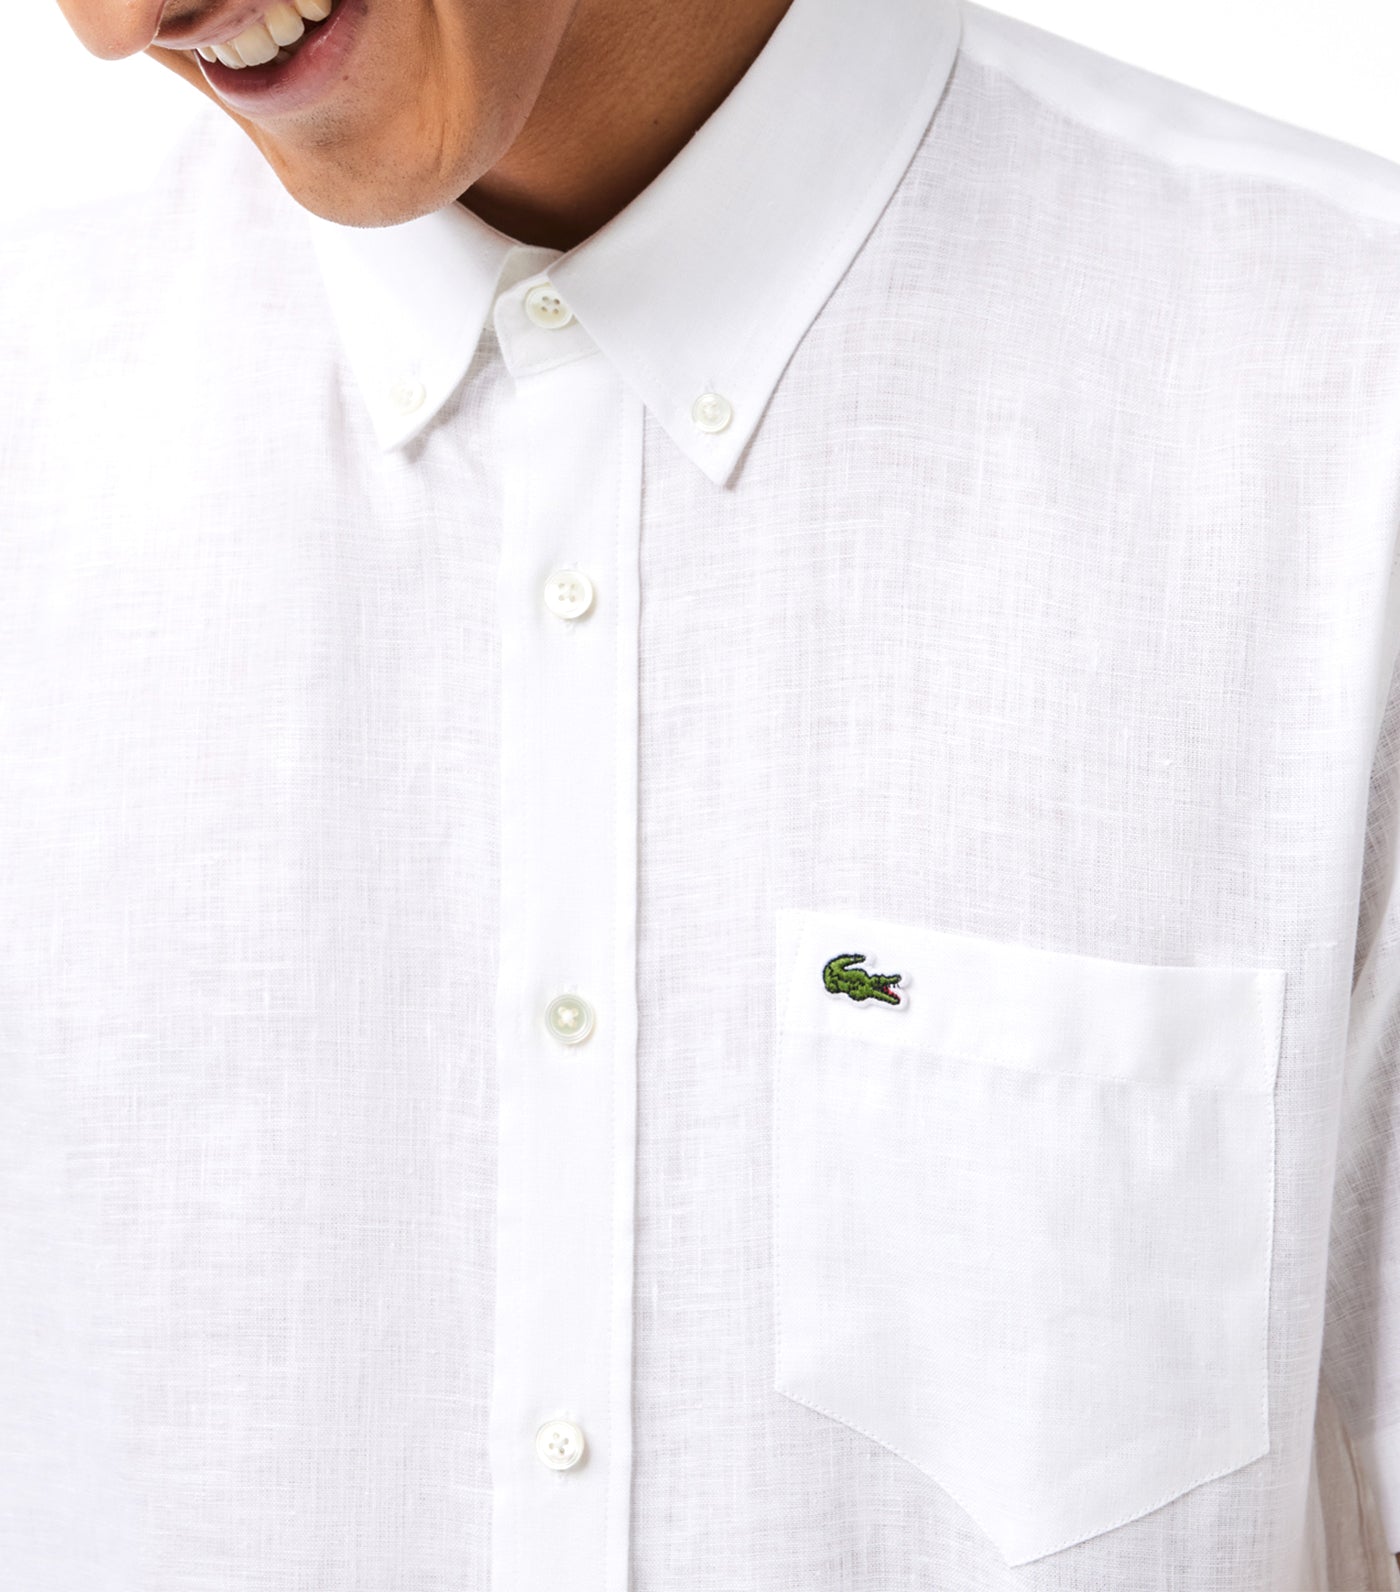 Men’s Lacoste Short Sleeve Linen Shirt White